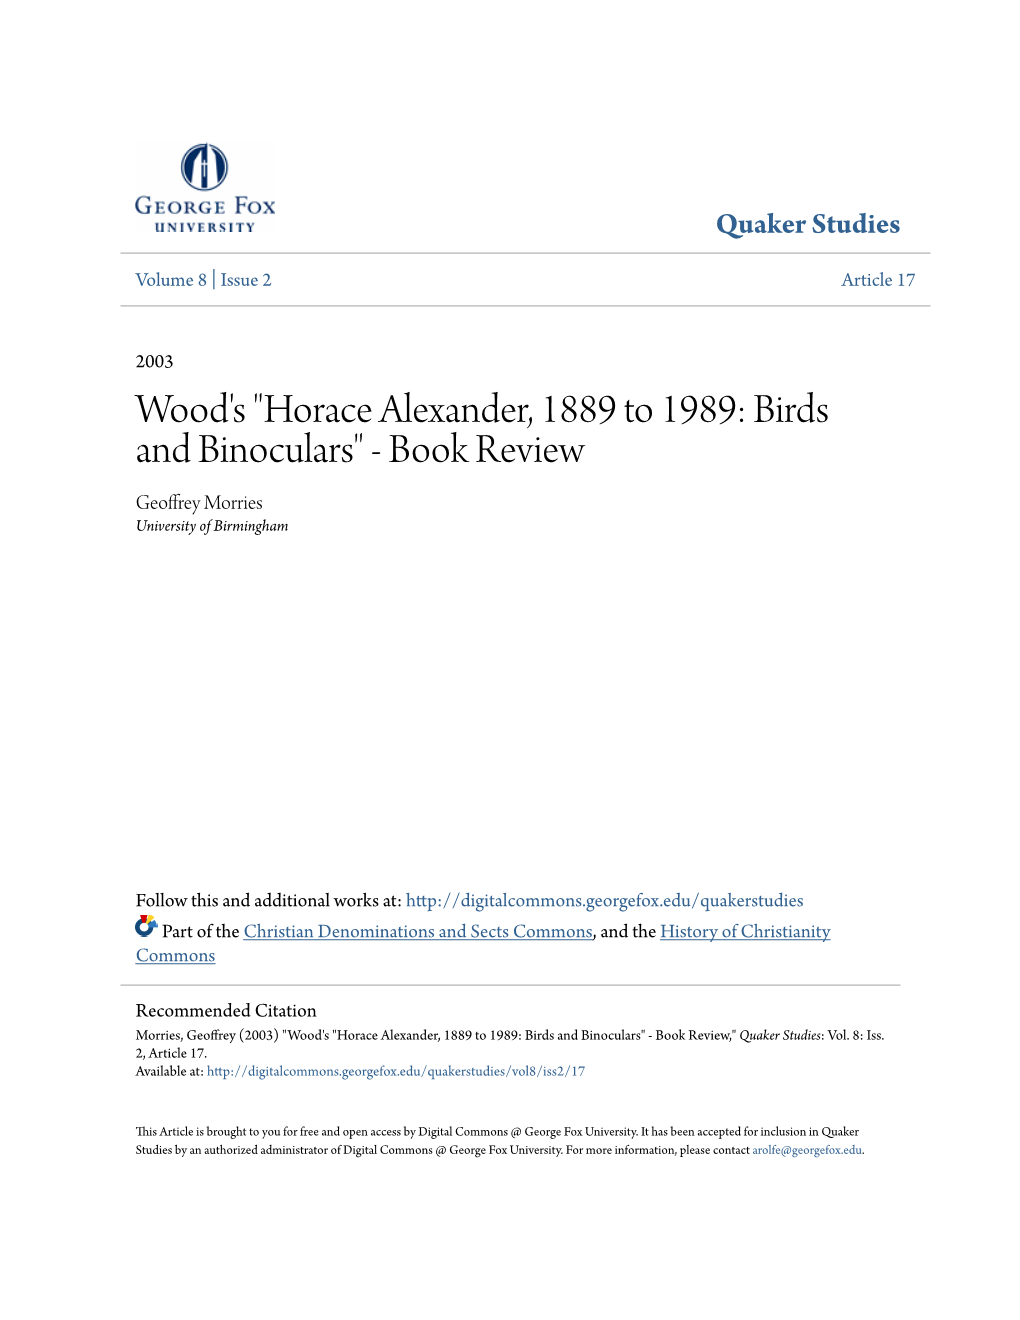 Wood's "Horace Alexander, 1889 to 1989: Birds and Binoculars" - Book Review Geoffrey Morries University of Birmingham